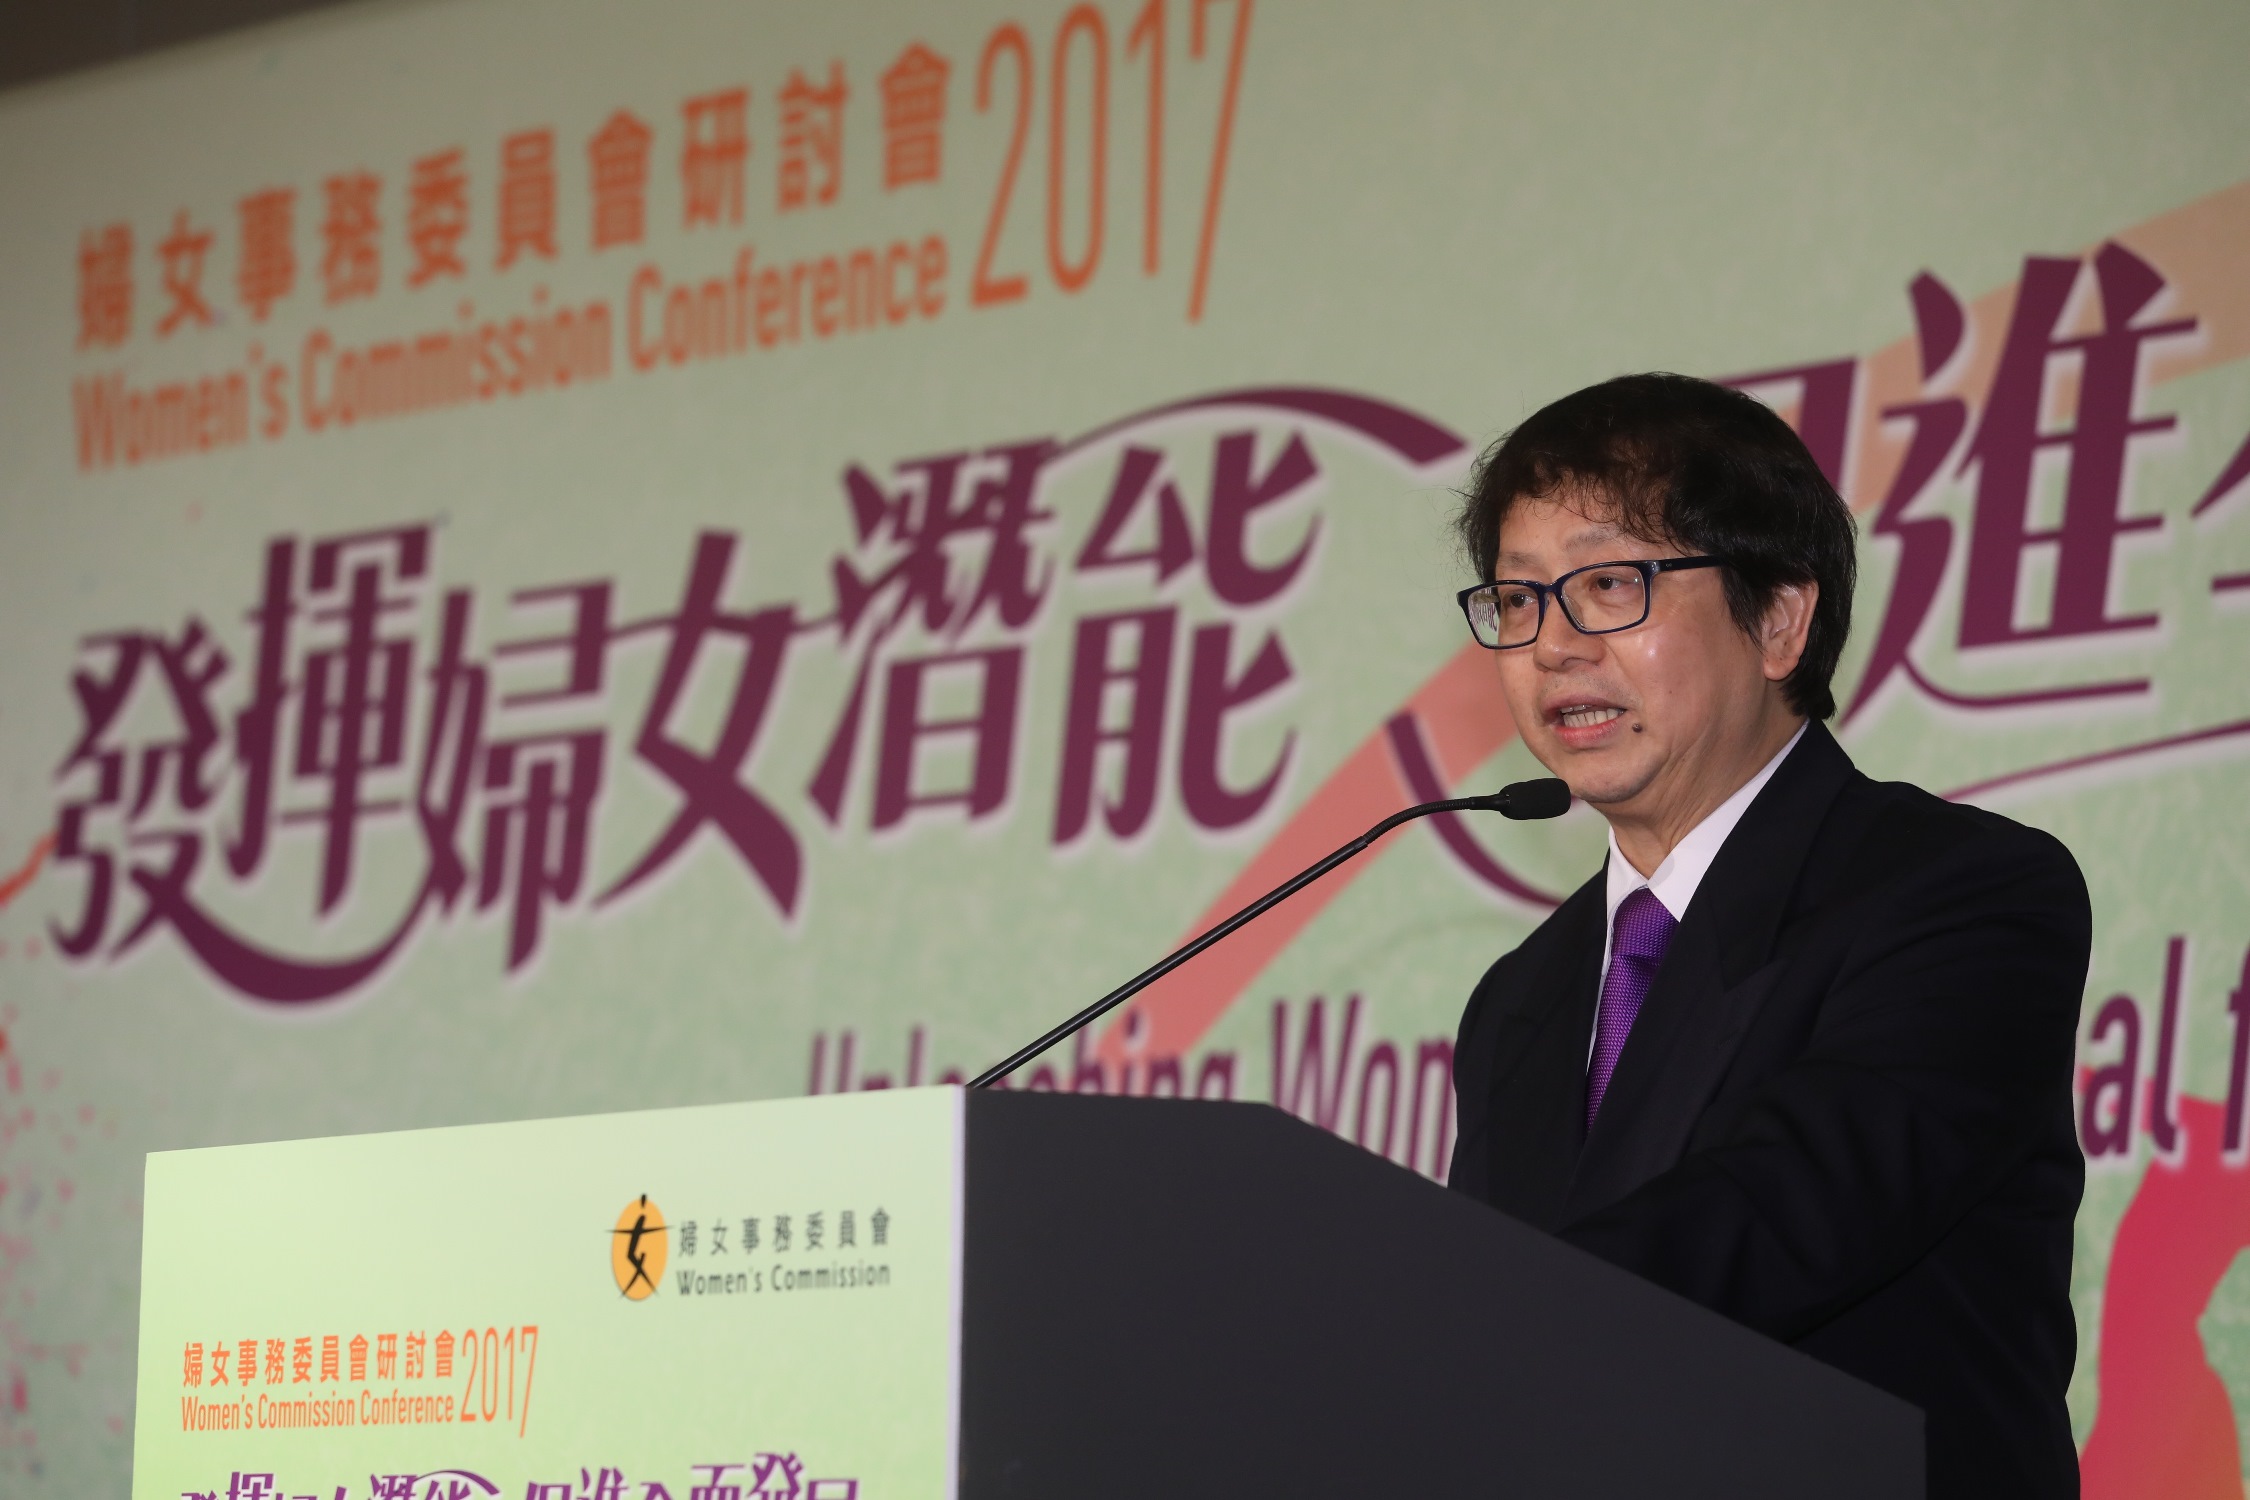 勞工及福利局局長蕭偉強於2月21日出席婦女事務委員會研討會2017，並在研討會的全體會議上，就「HeForShe－男性在倡導改變的角色」發表專題演說。